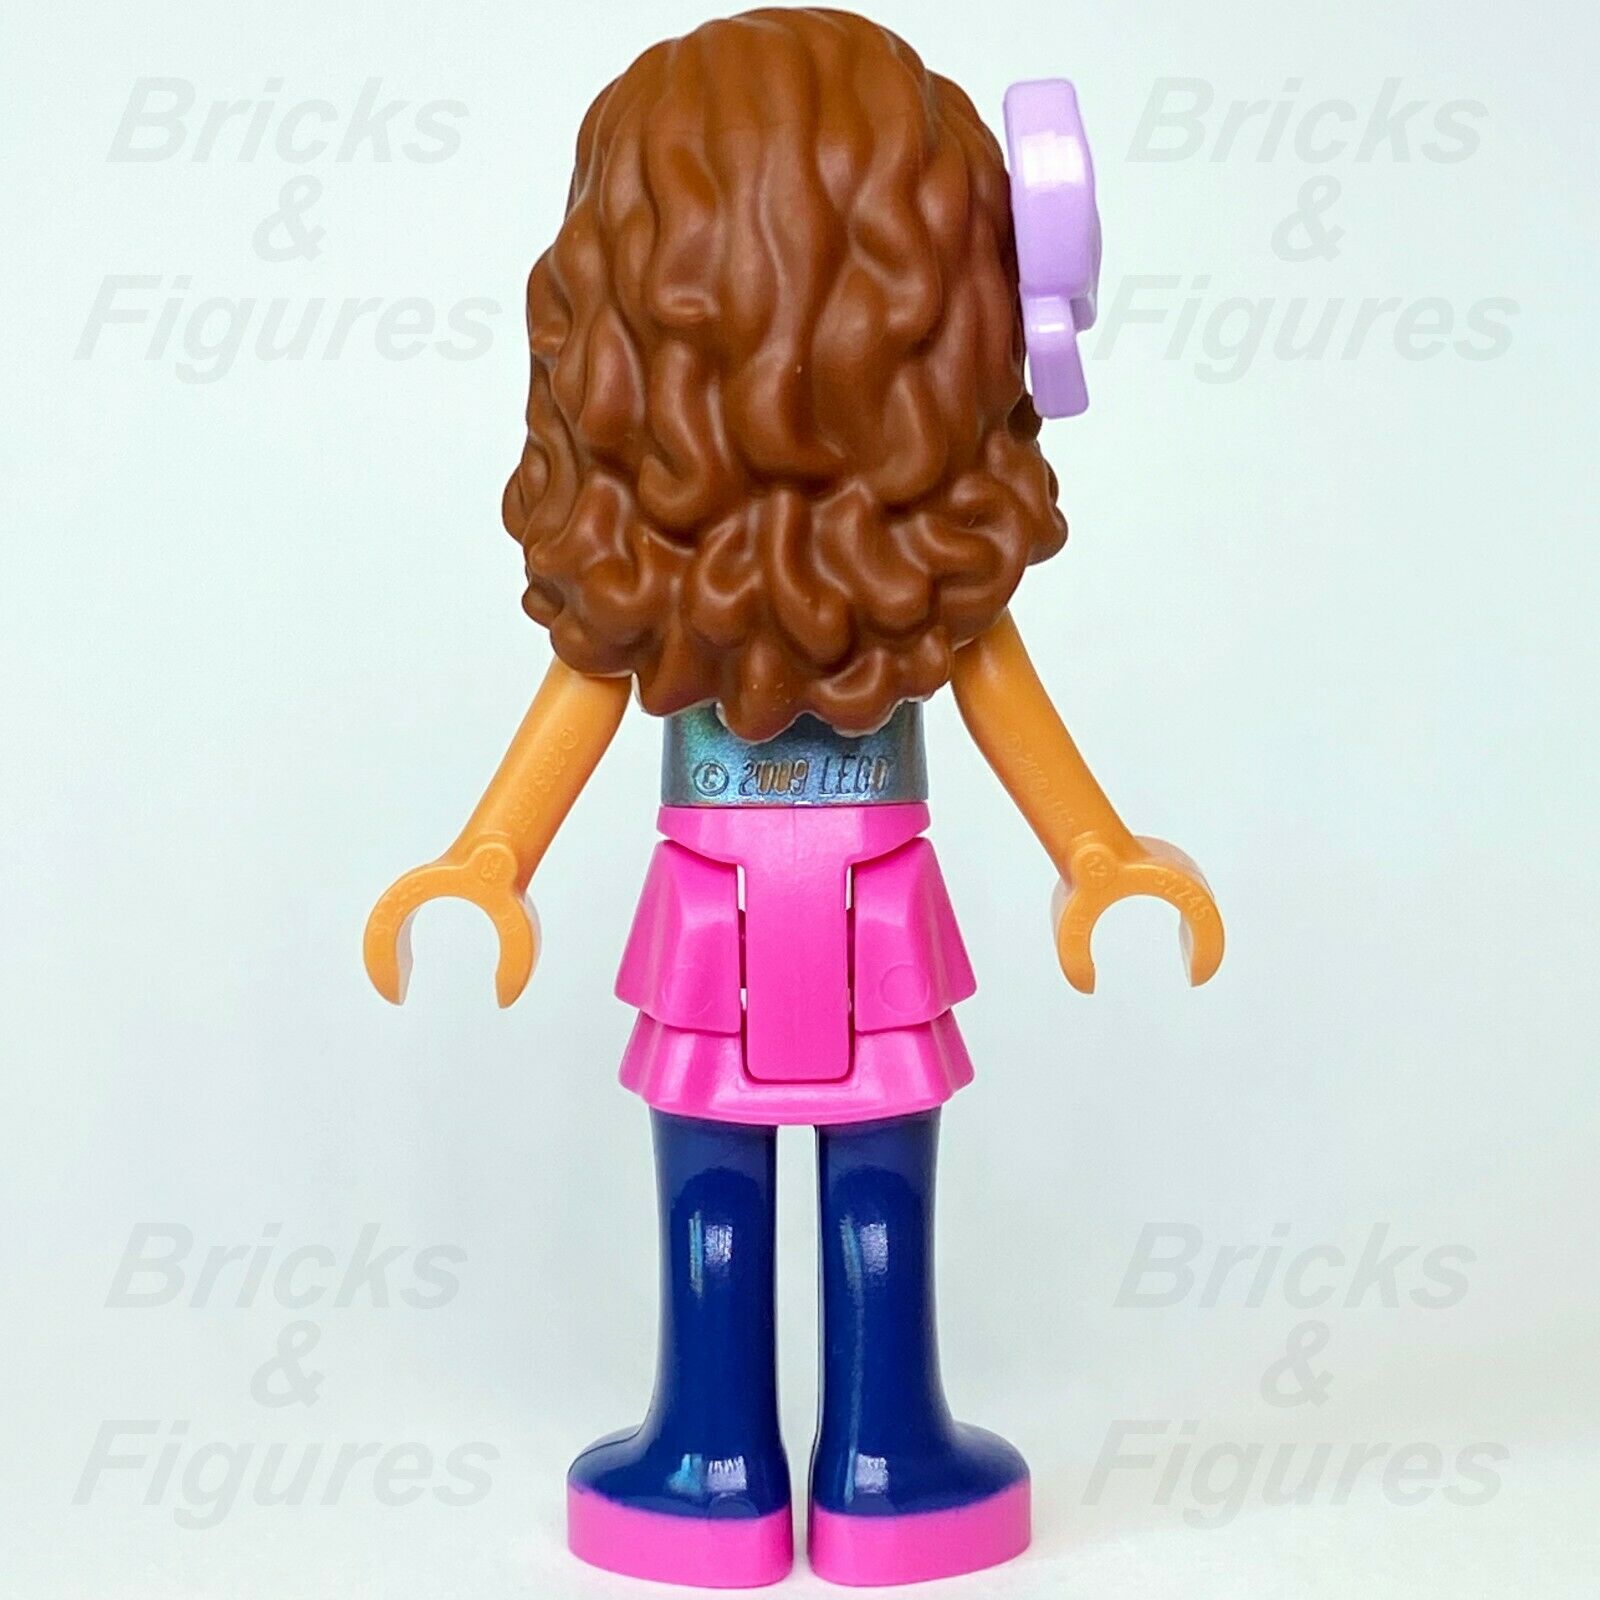 Friends LEGO Olivia Engineer Scientist Pink Skirt with Jacket Minifigure 41375 - Bricks & Figures